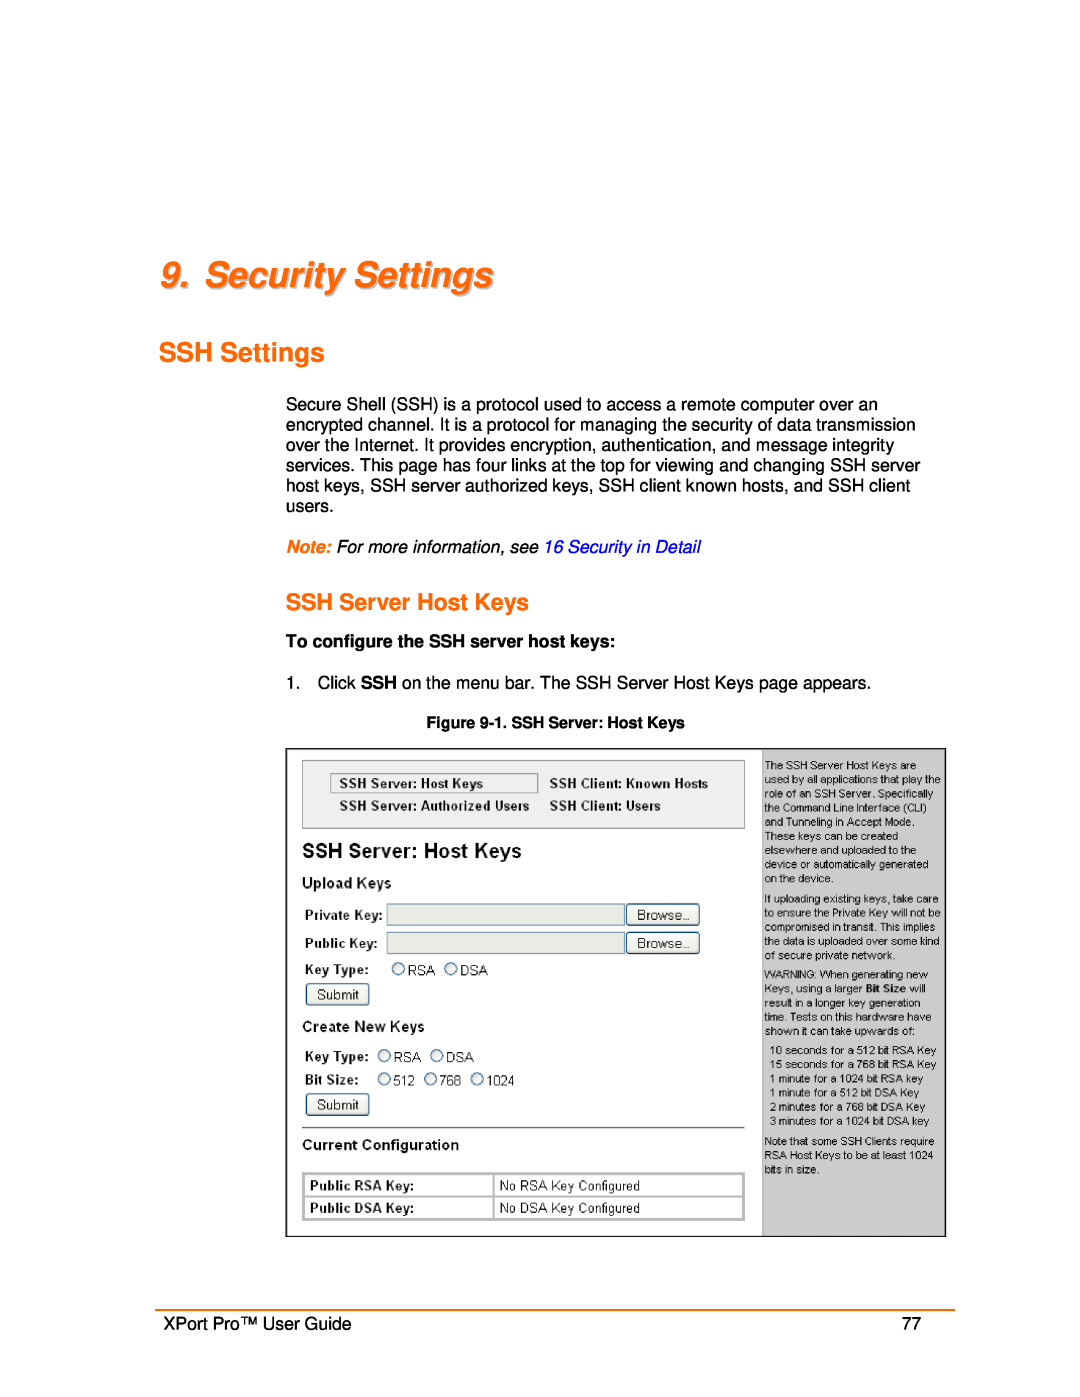 Lantronix 900-560 manual Security Settings, SSH Settings, SSH Server Host Keys 